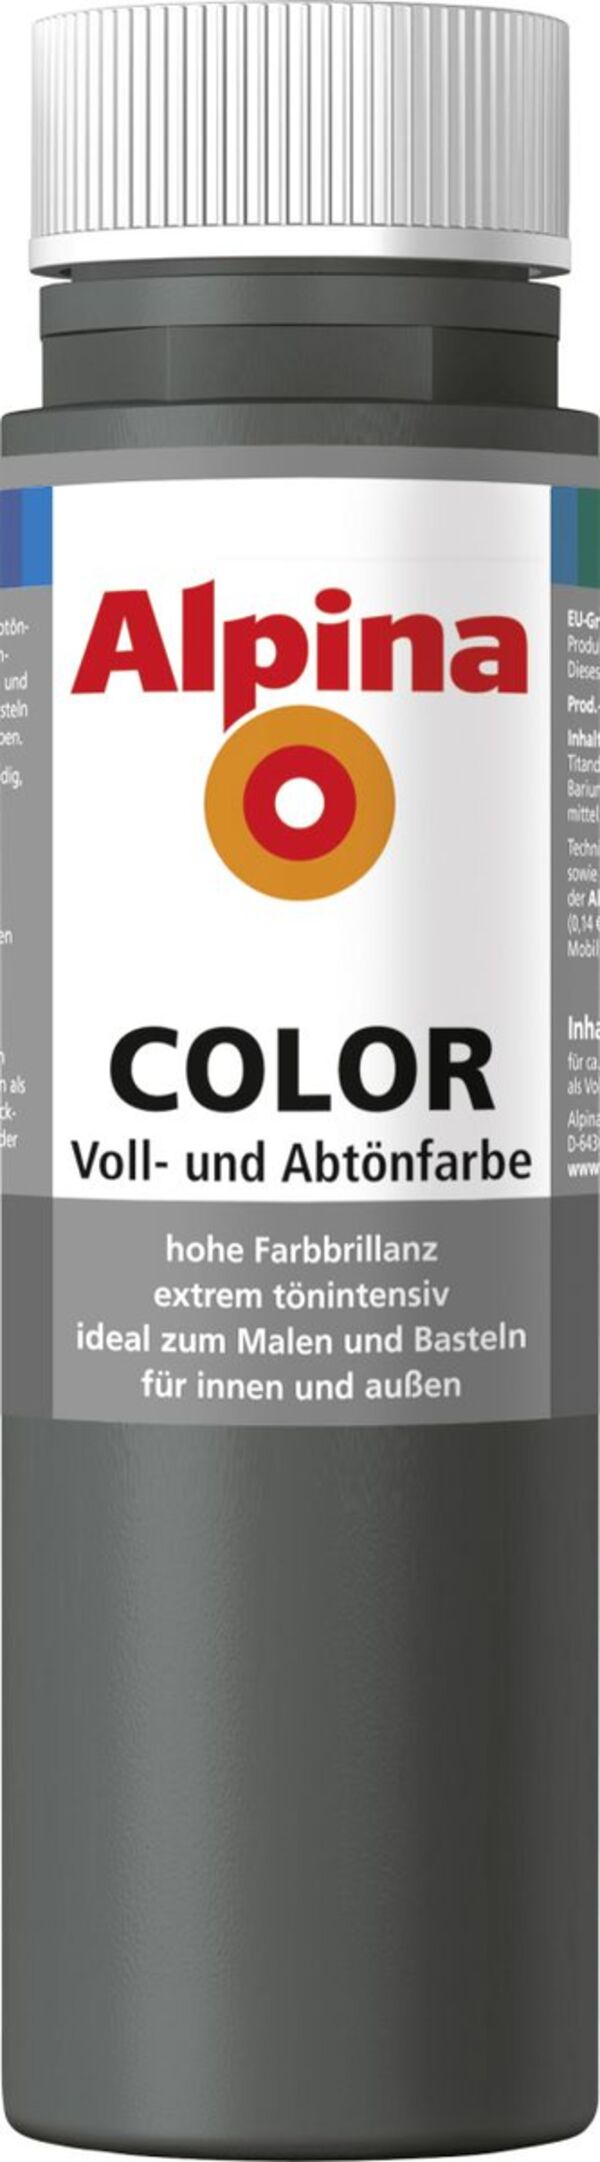 Bild 1 von Alpina COLOR Voll- und Abtönfarbe
, 
dark grey, 250 ml